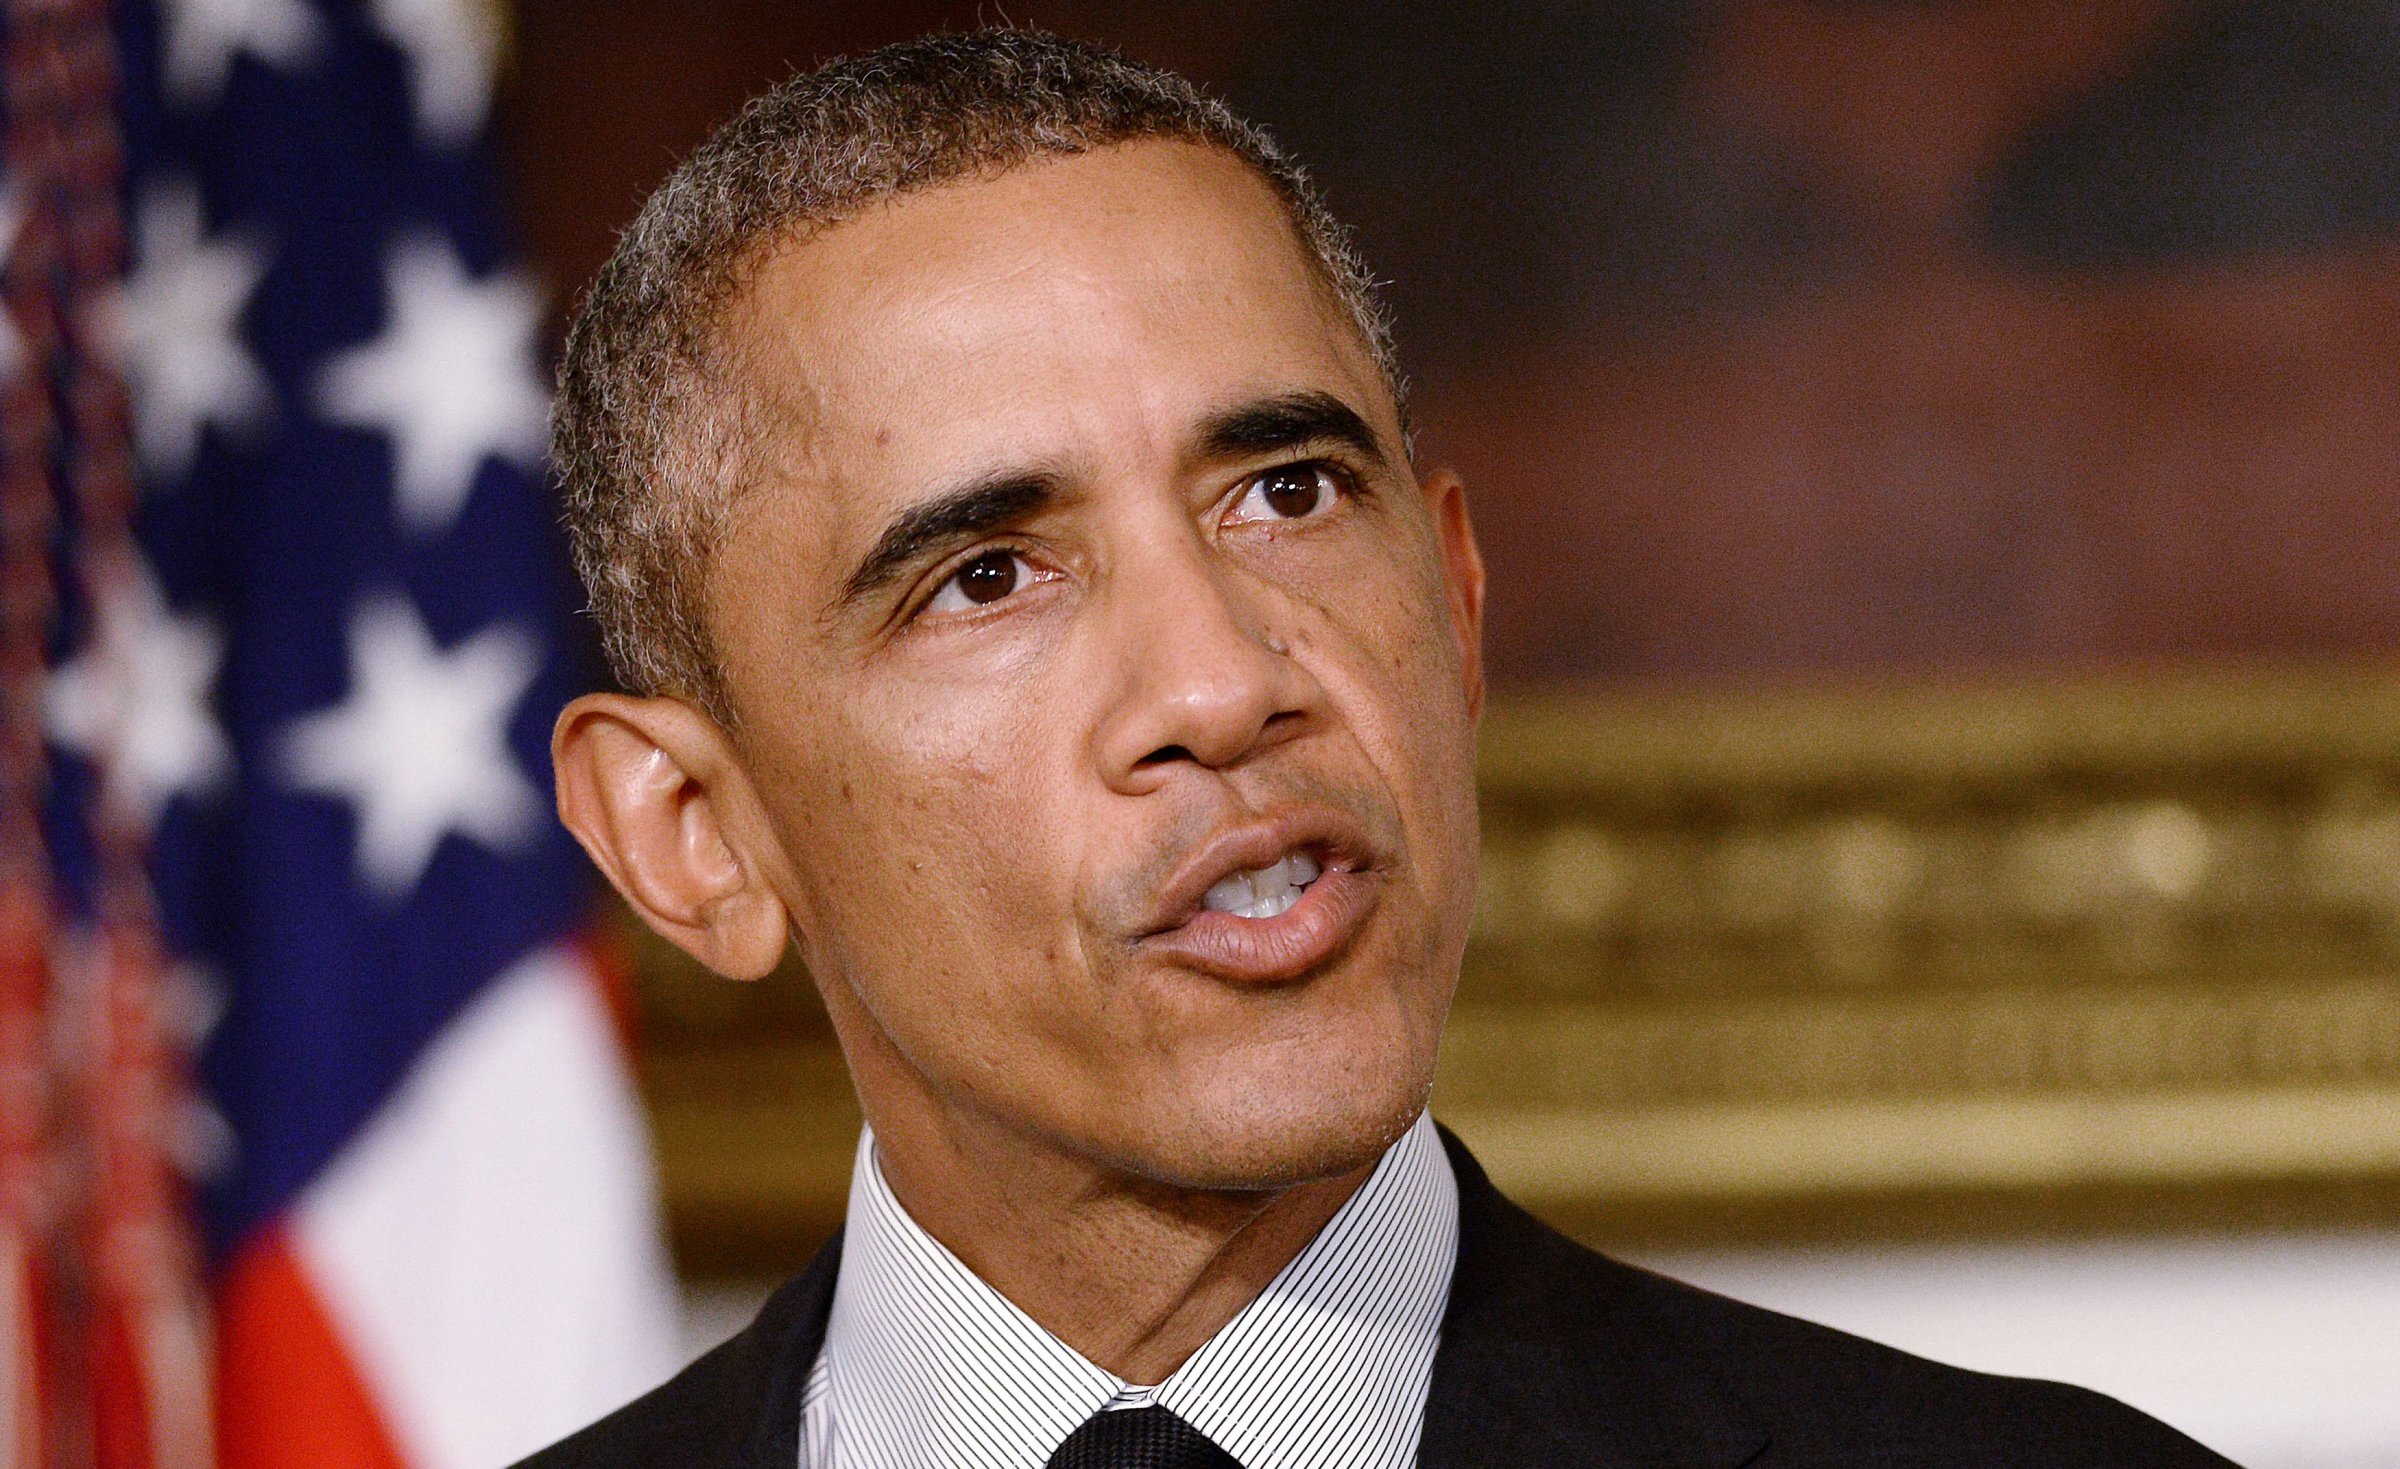 Barack Obama Statement after U.S. Senate Cast Final Vote on Arming Syrian Rebels